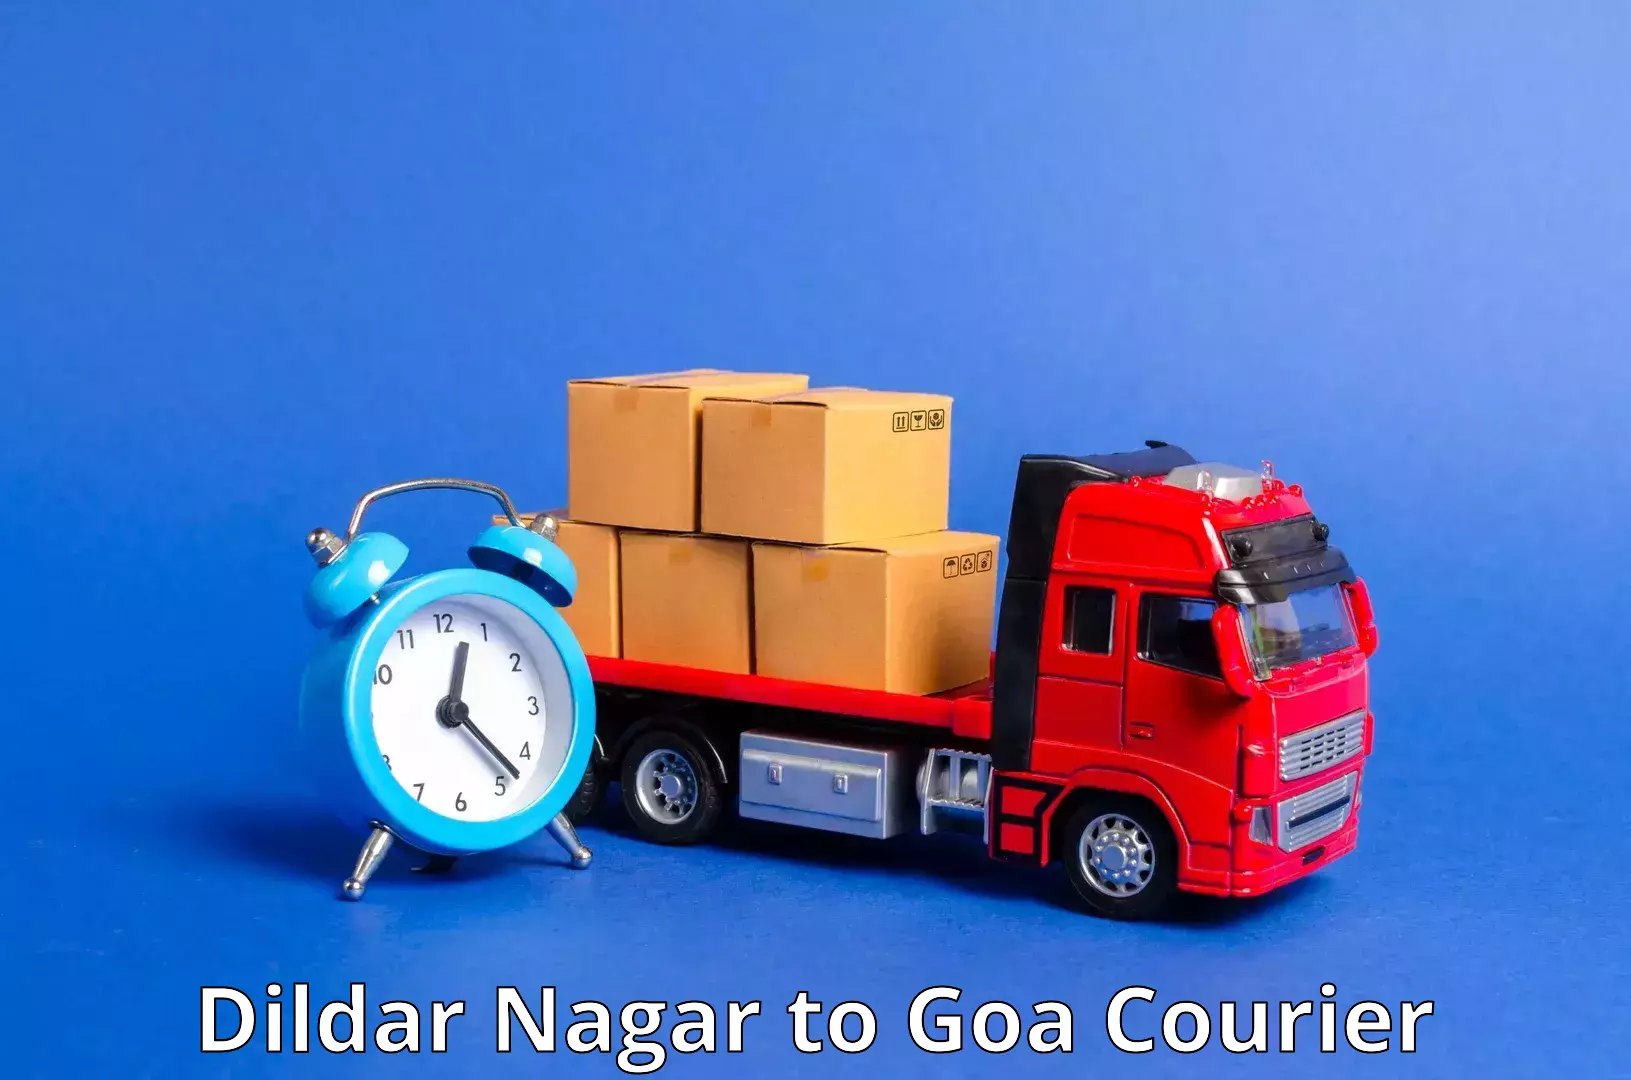 24-hour courier service Dildar Nagar to Ponda